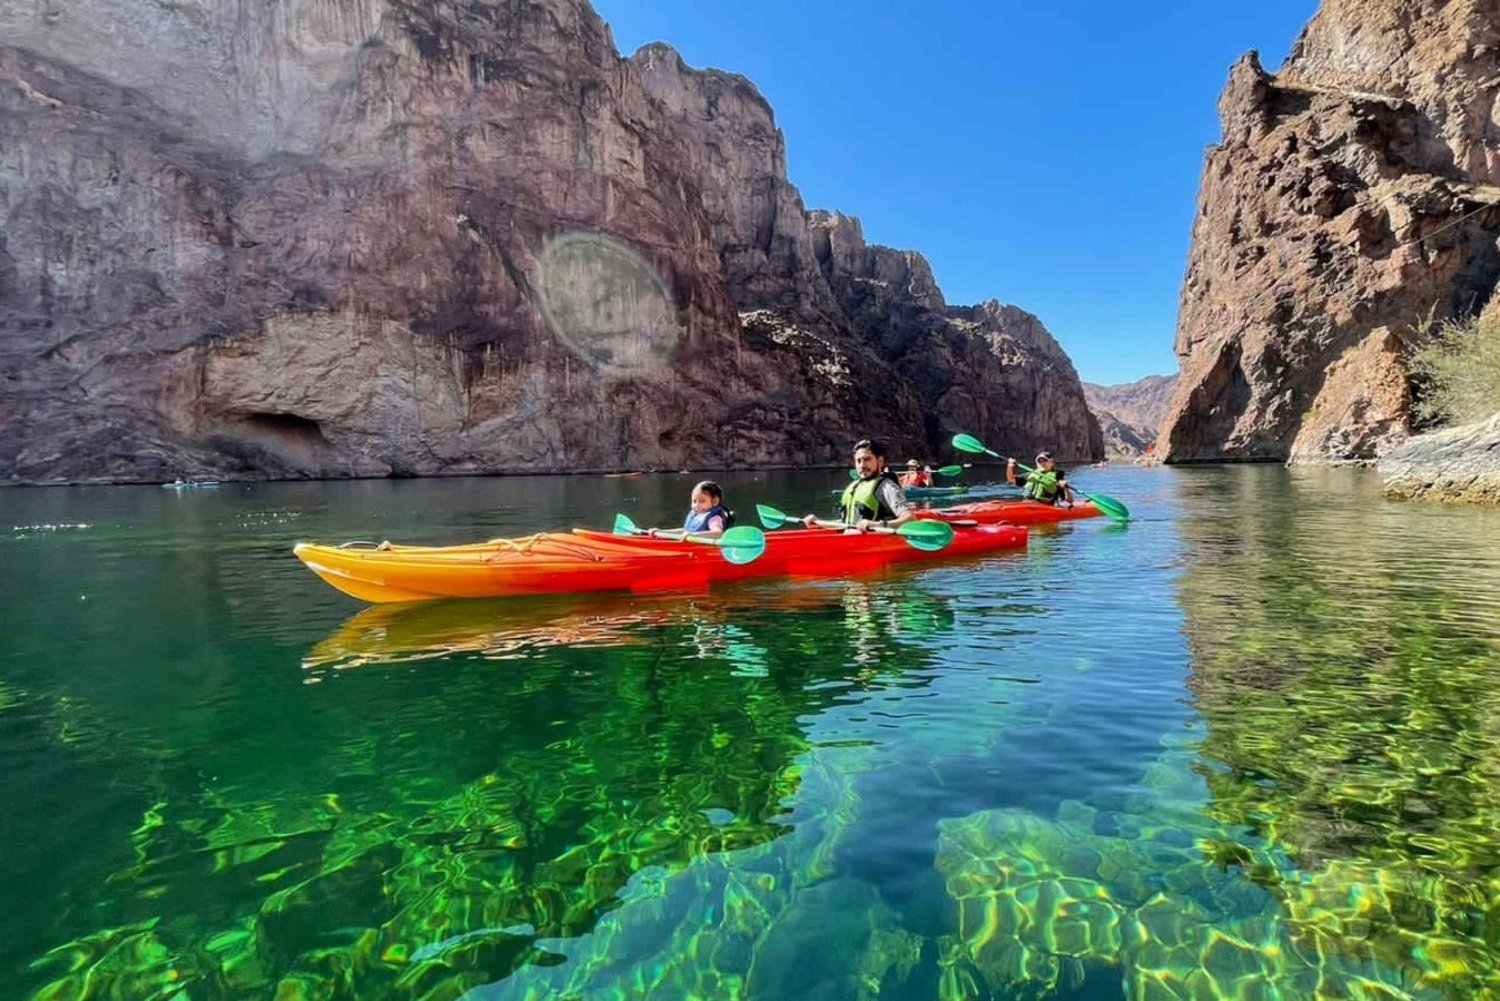 Las Vegasista: Emerald Cave Kayak Tour